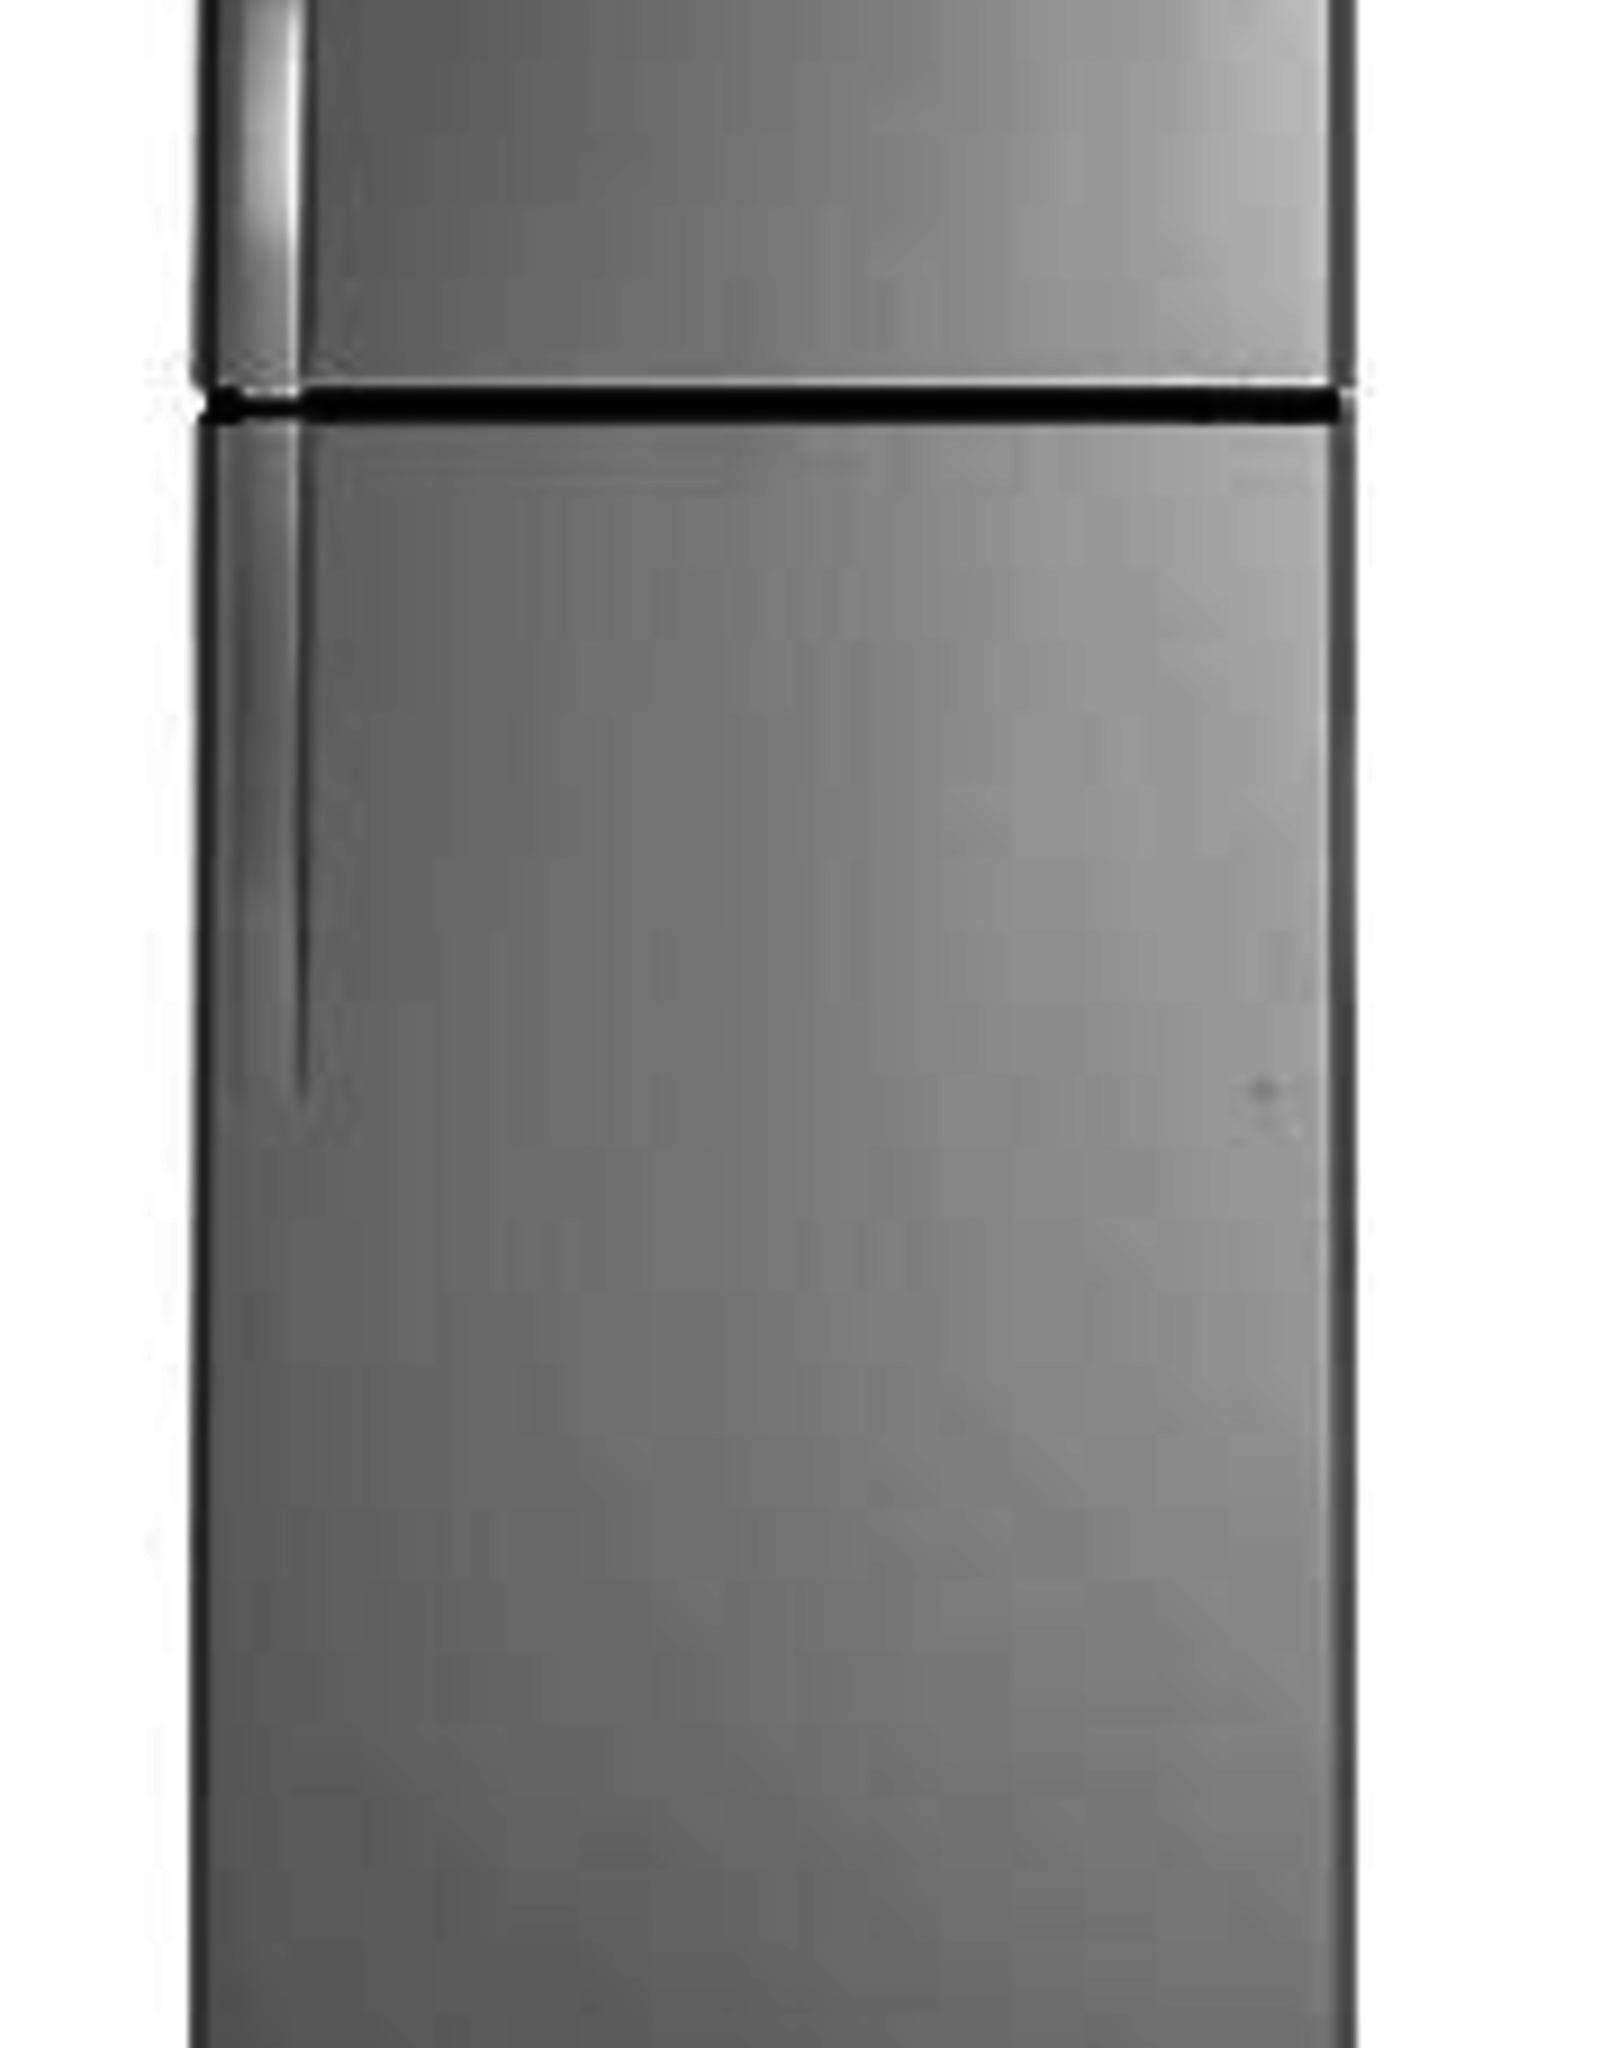 Woodson & Bozeman GE 18 CUFT Refrigerator : Stainless Steel